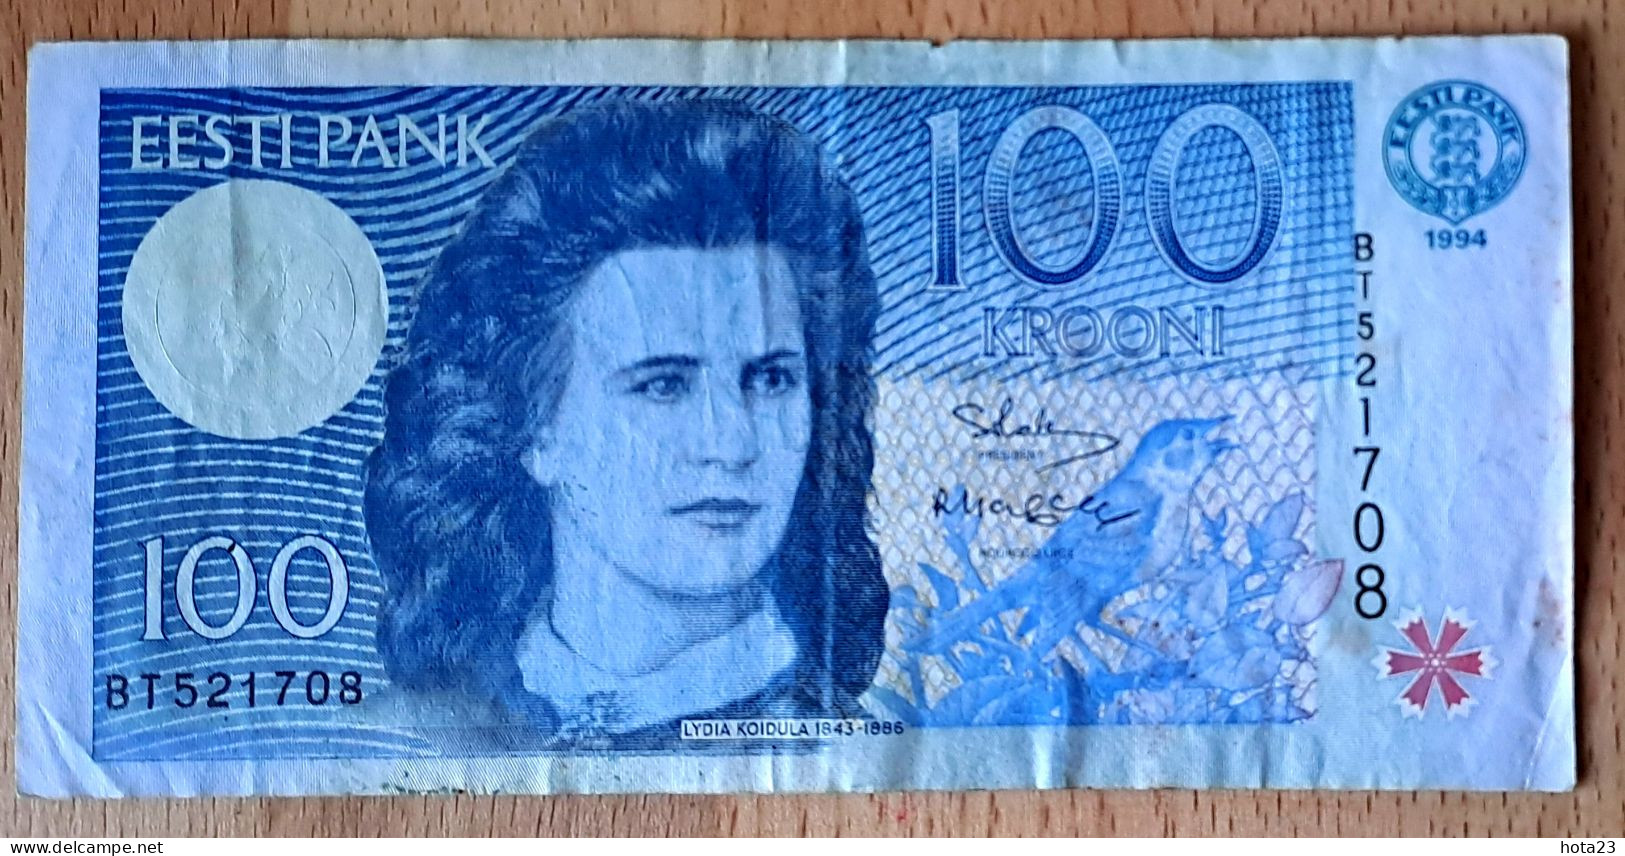 (!)  1994 ESTONIA , Estland  100 KROONI P79  EURO CUCKOO BIRD Circulated - Estonia